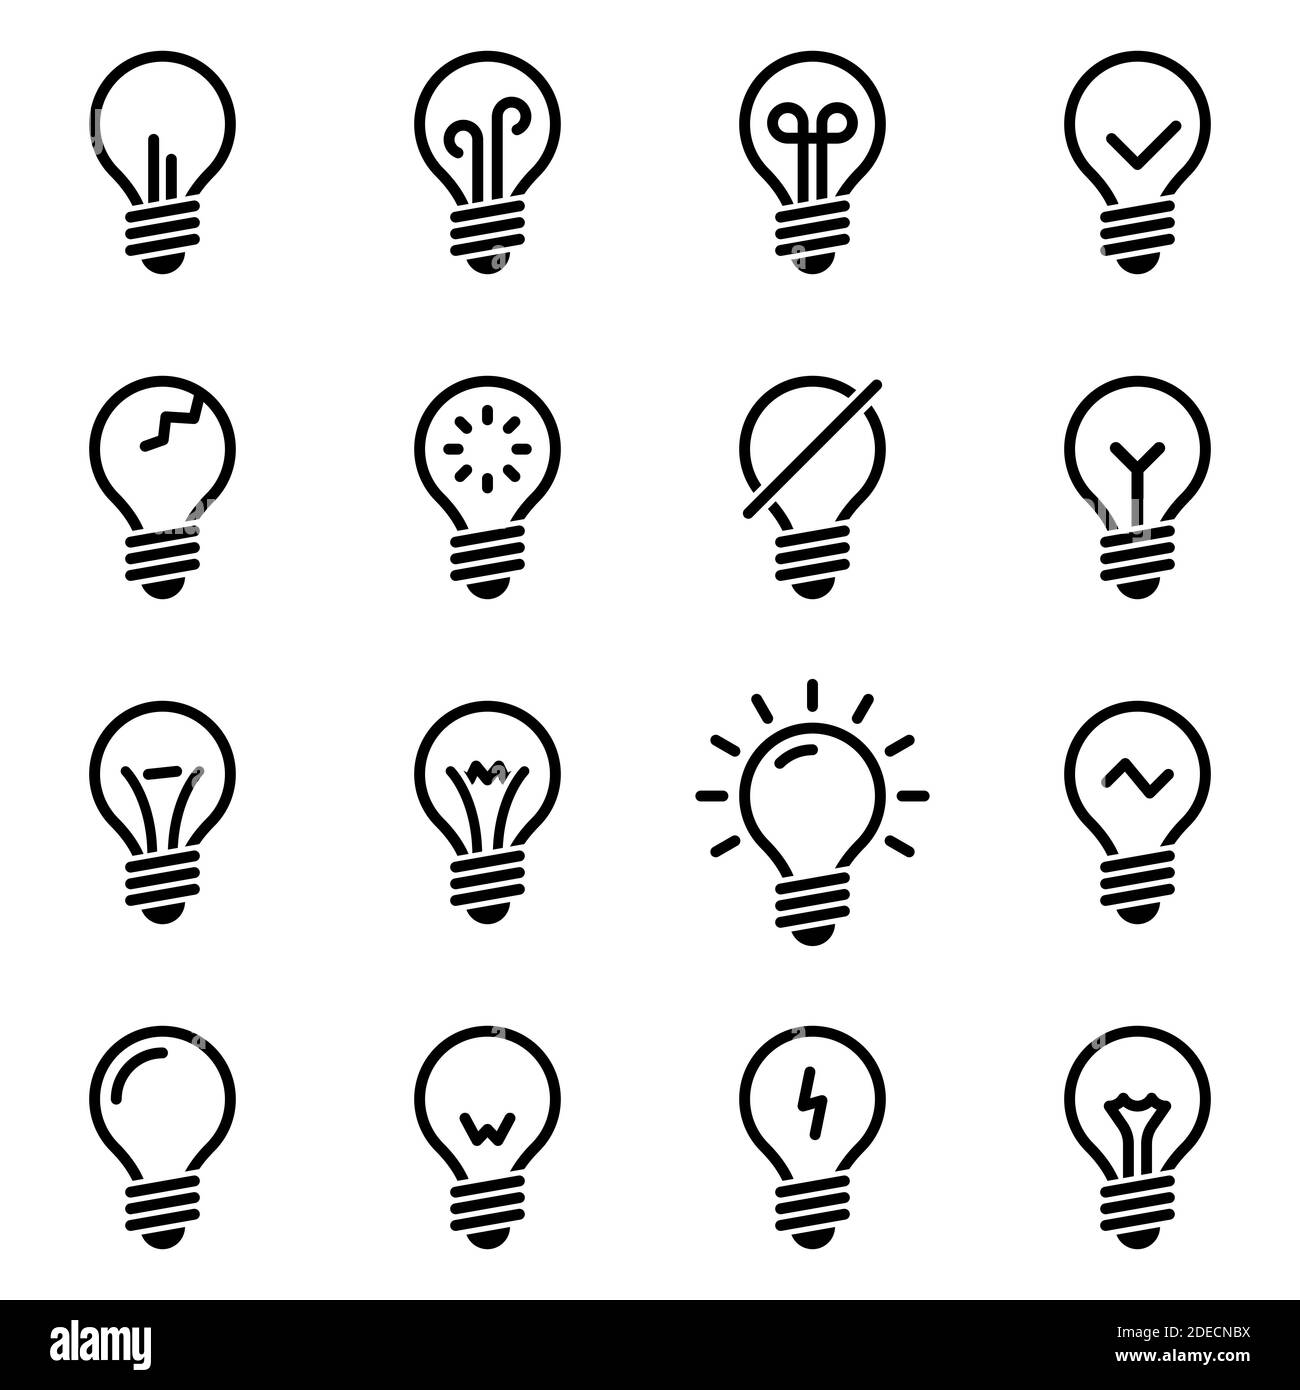 Satz von einfachen Symbolen auf einem Thema Lampe, Beleuchtung, Vektor, Satz. Weißer Hintergrund Stock Vektor